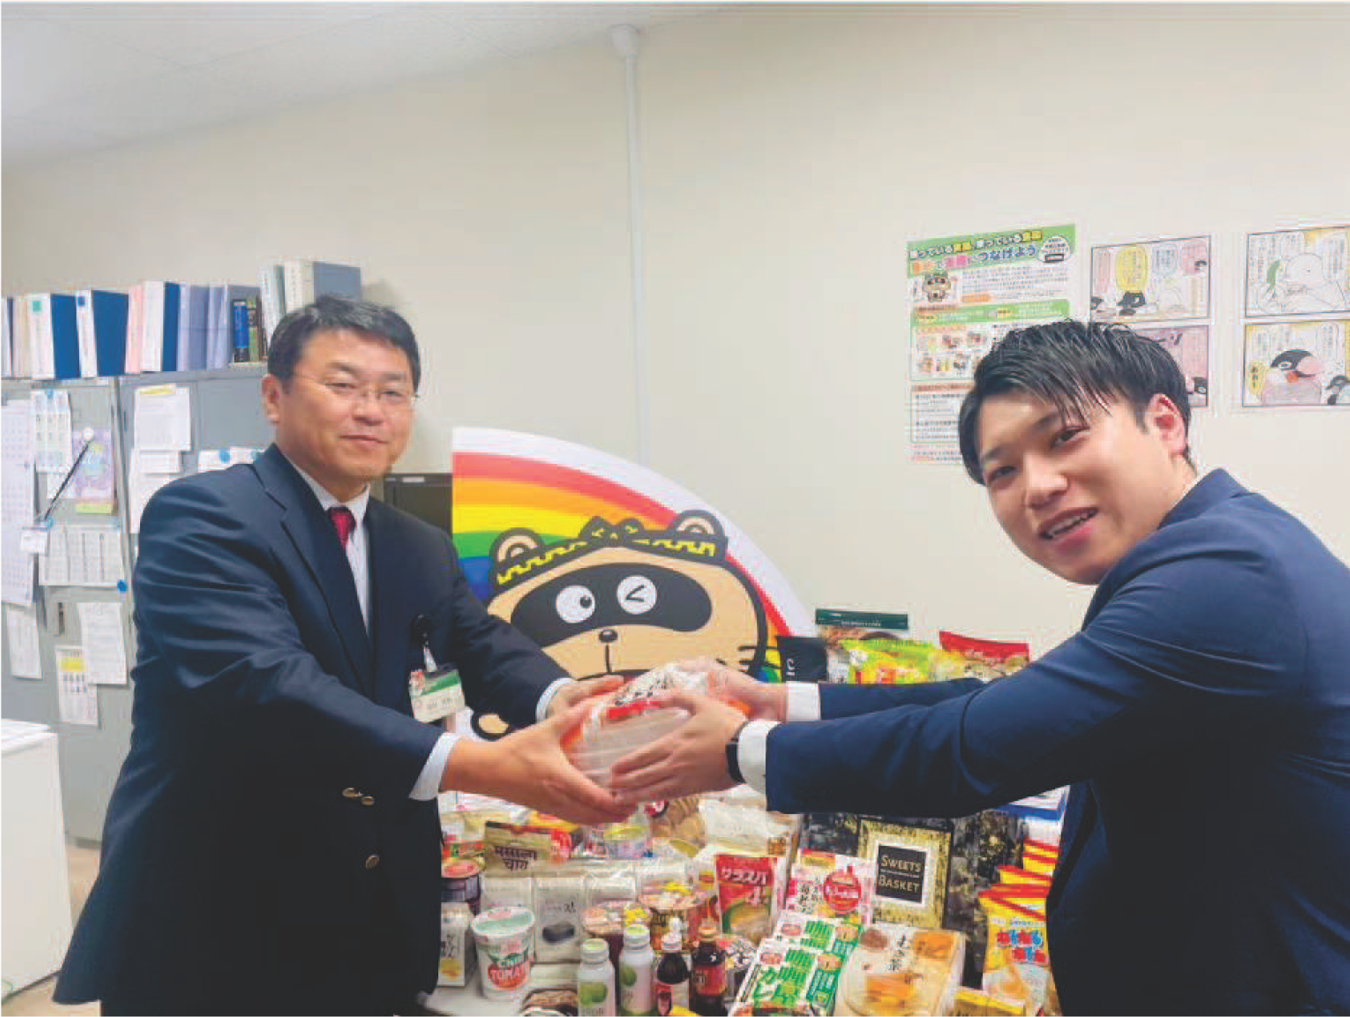 中村生活環境部長（写真左）と第一生命株式会社 佐藤様（写真右）